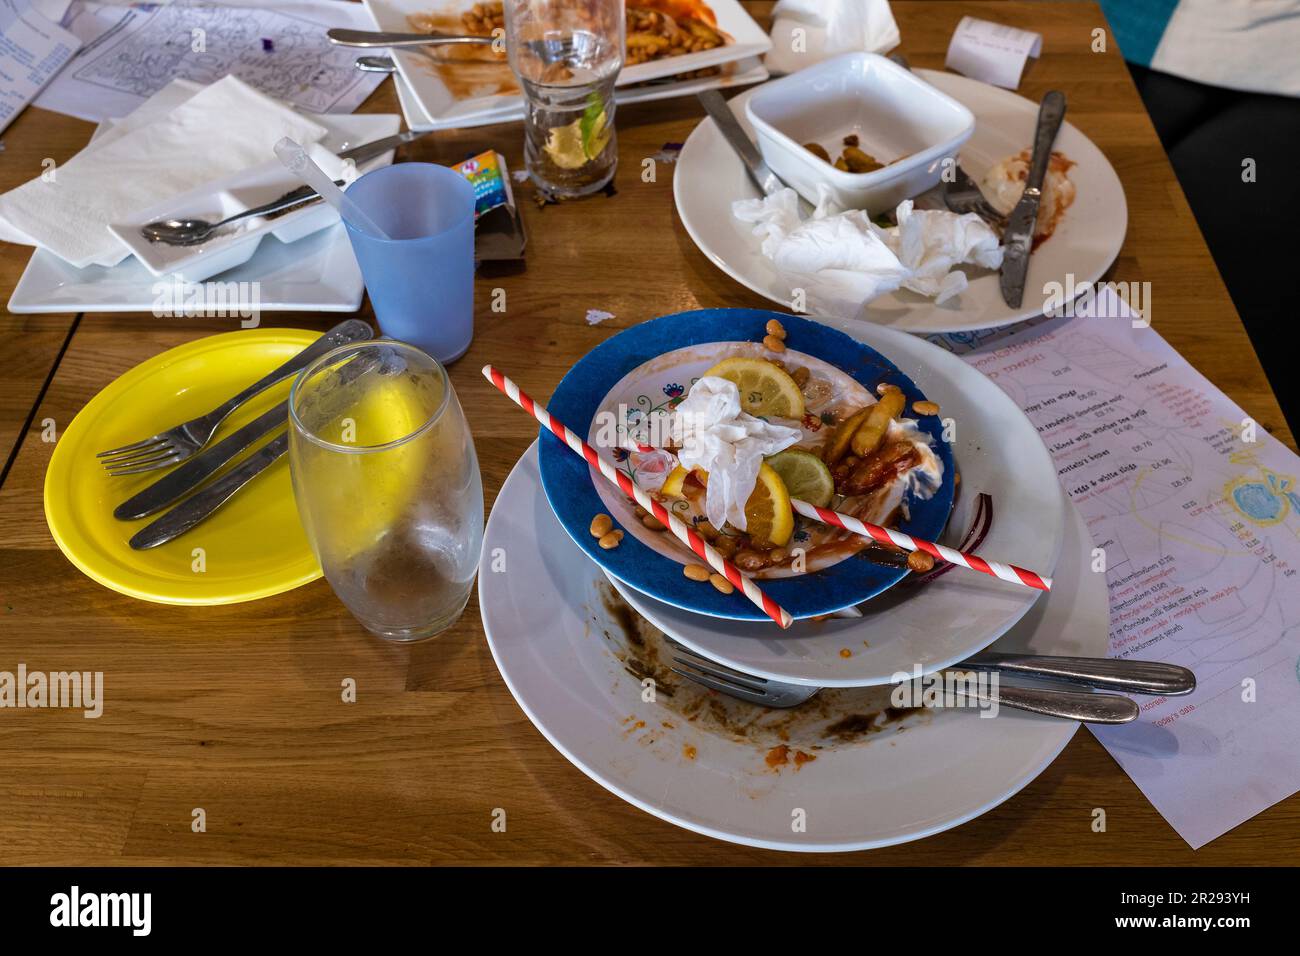 Une table dans un restaurant encombrée de plats sales après un repas. Banque D'Images